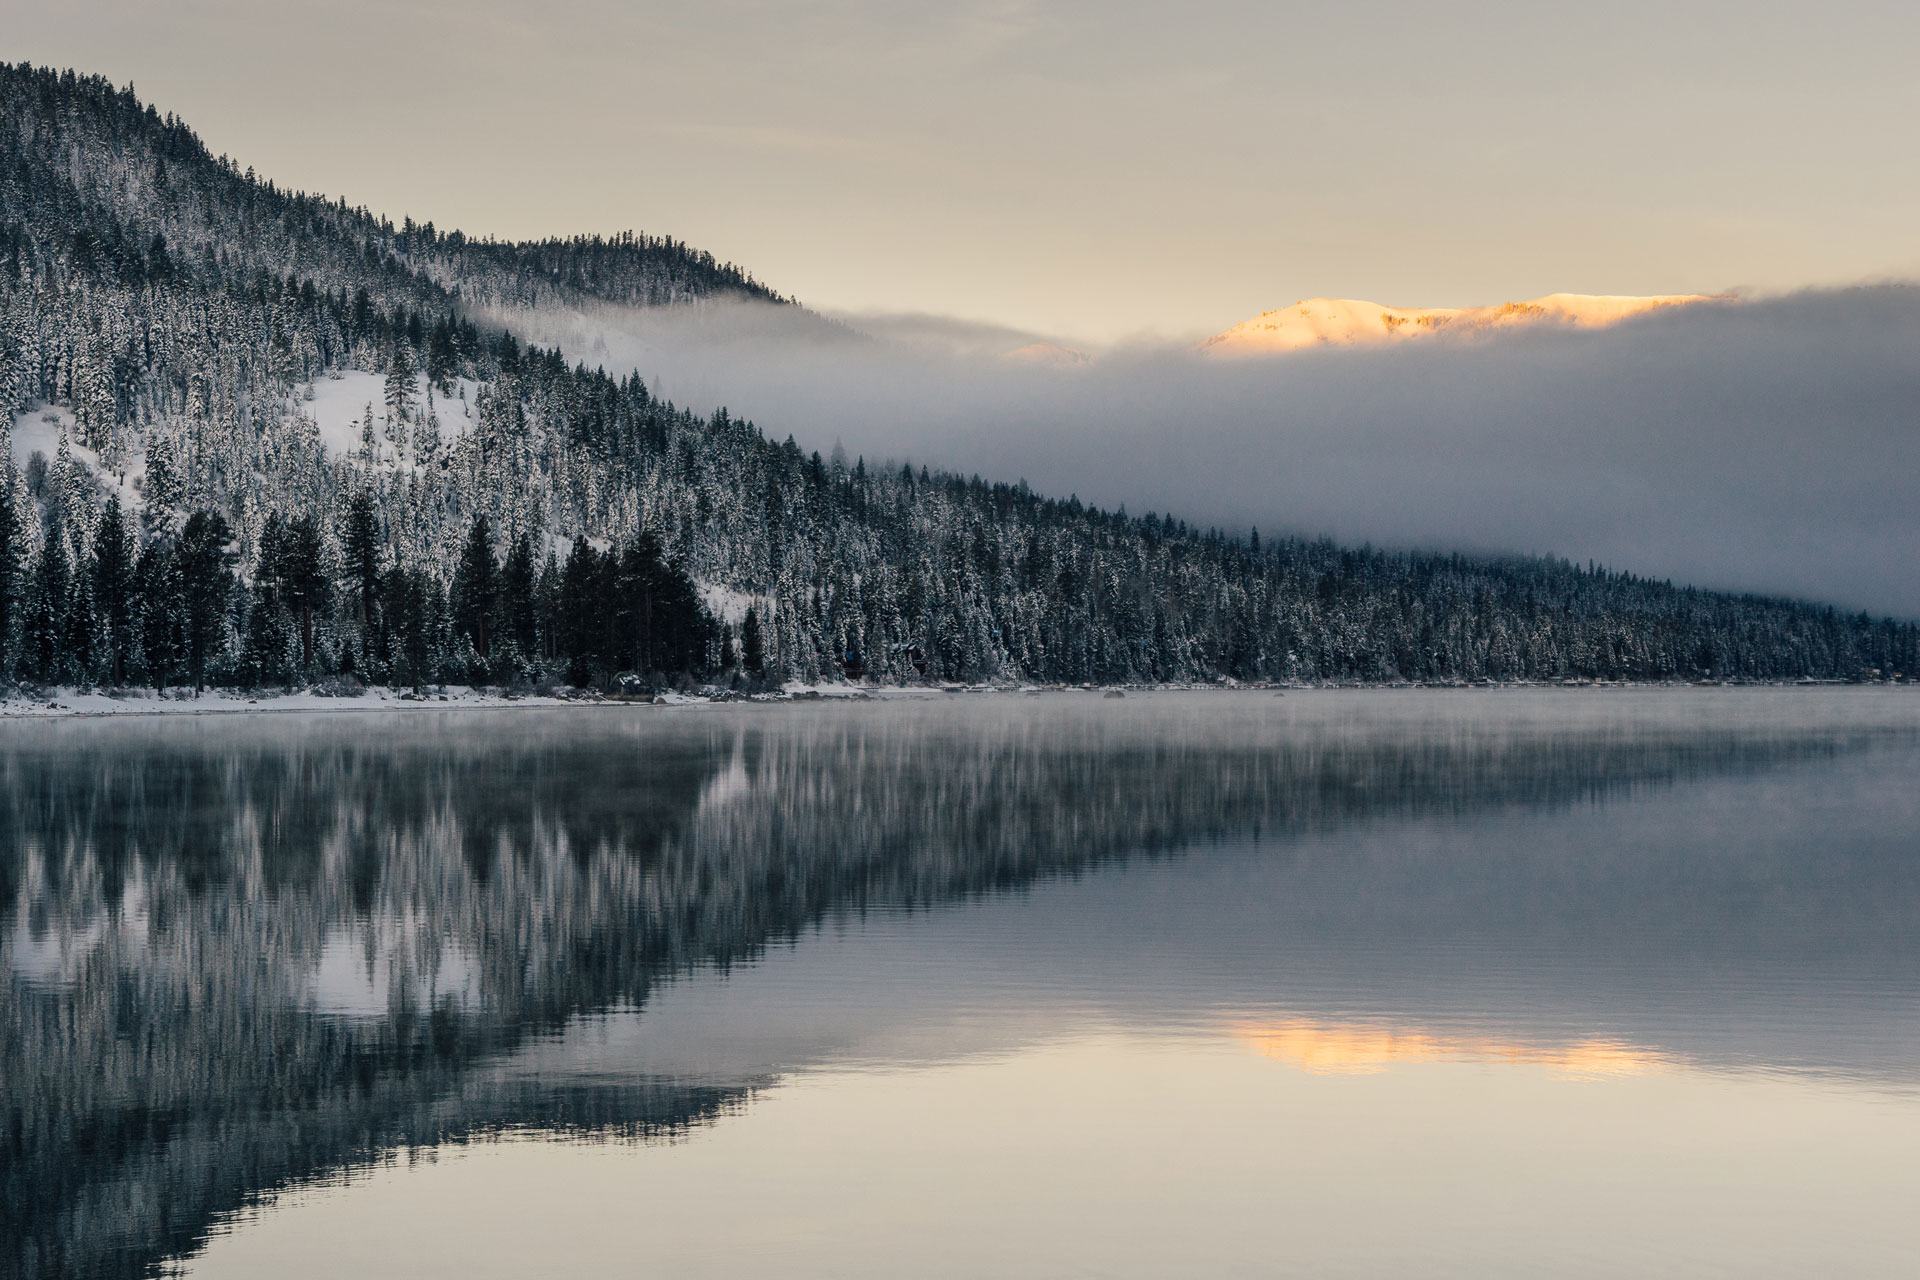 Wintersunrise at Donner Lake California.